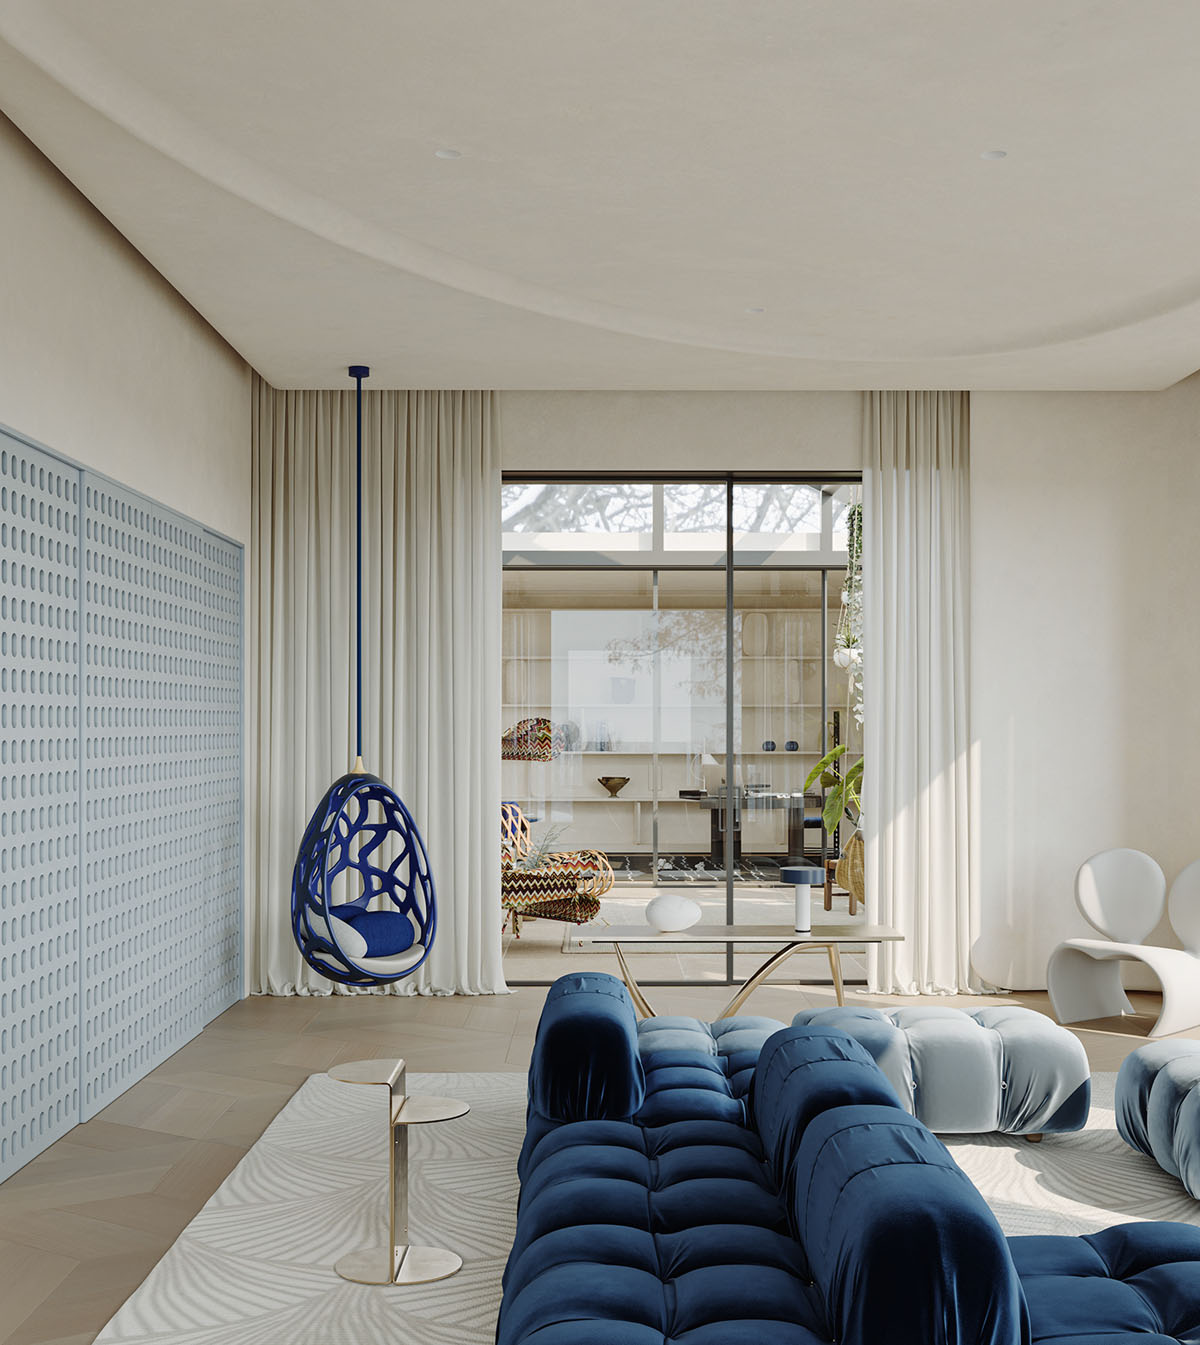 Interior de una casa con acento azul animado